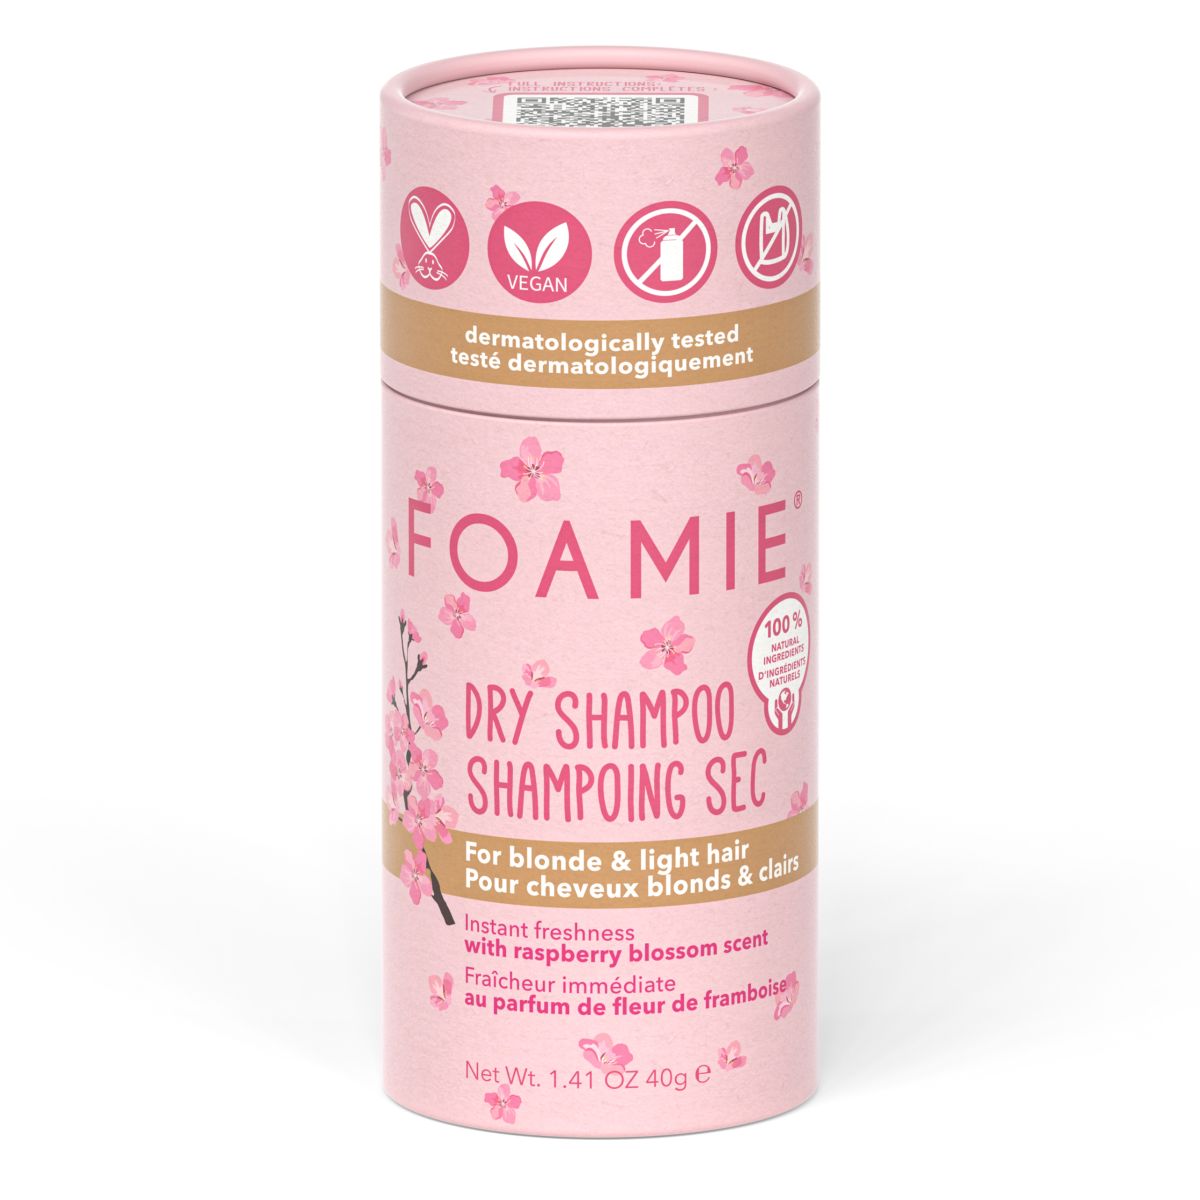 Foamie Dry Shampoo Kalymnos Berry Blonde - Shop